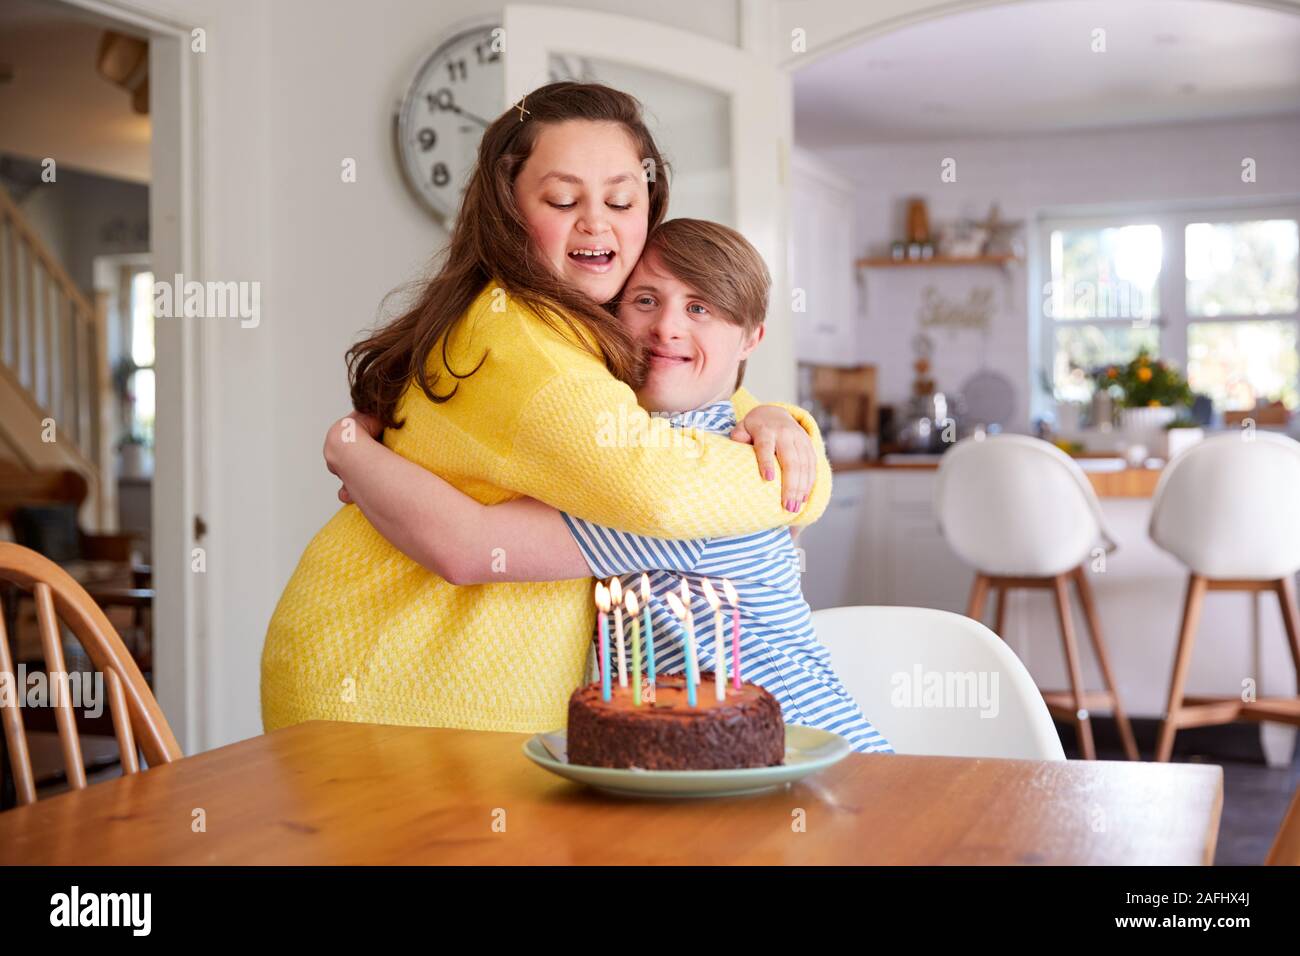 Les jeunes couples célébrant le syndrome de Down à la maison d'anniversaire avec gâteau Banque D'Images